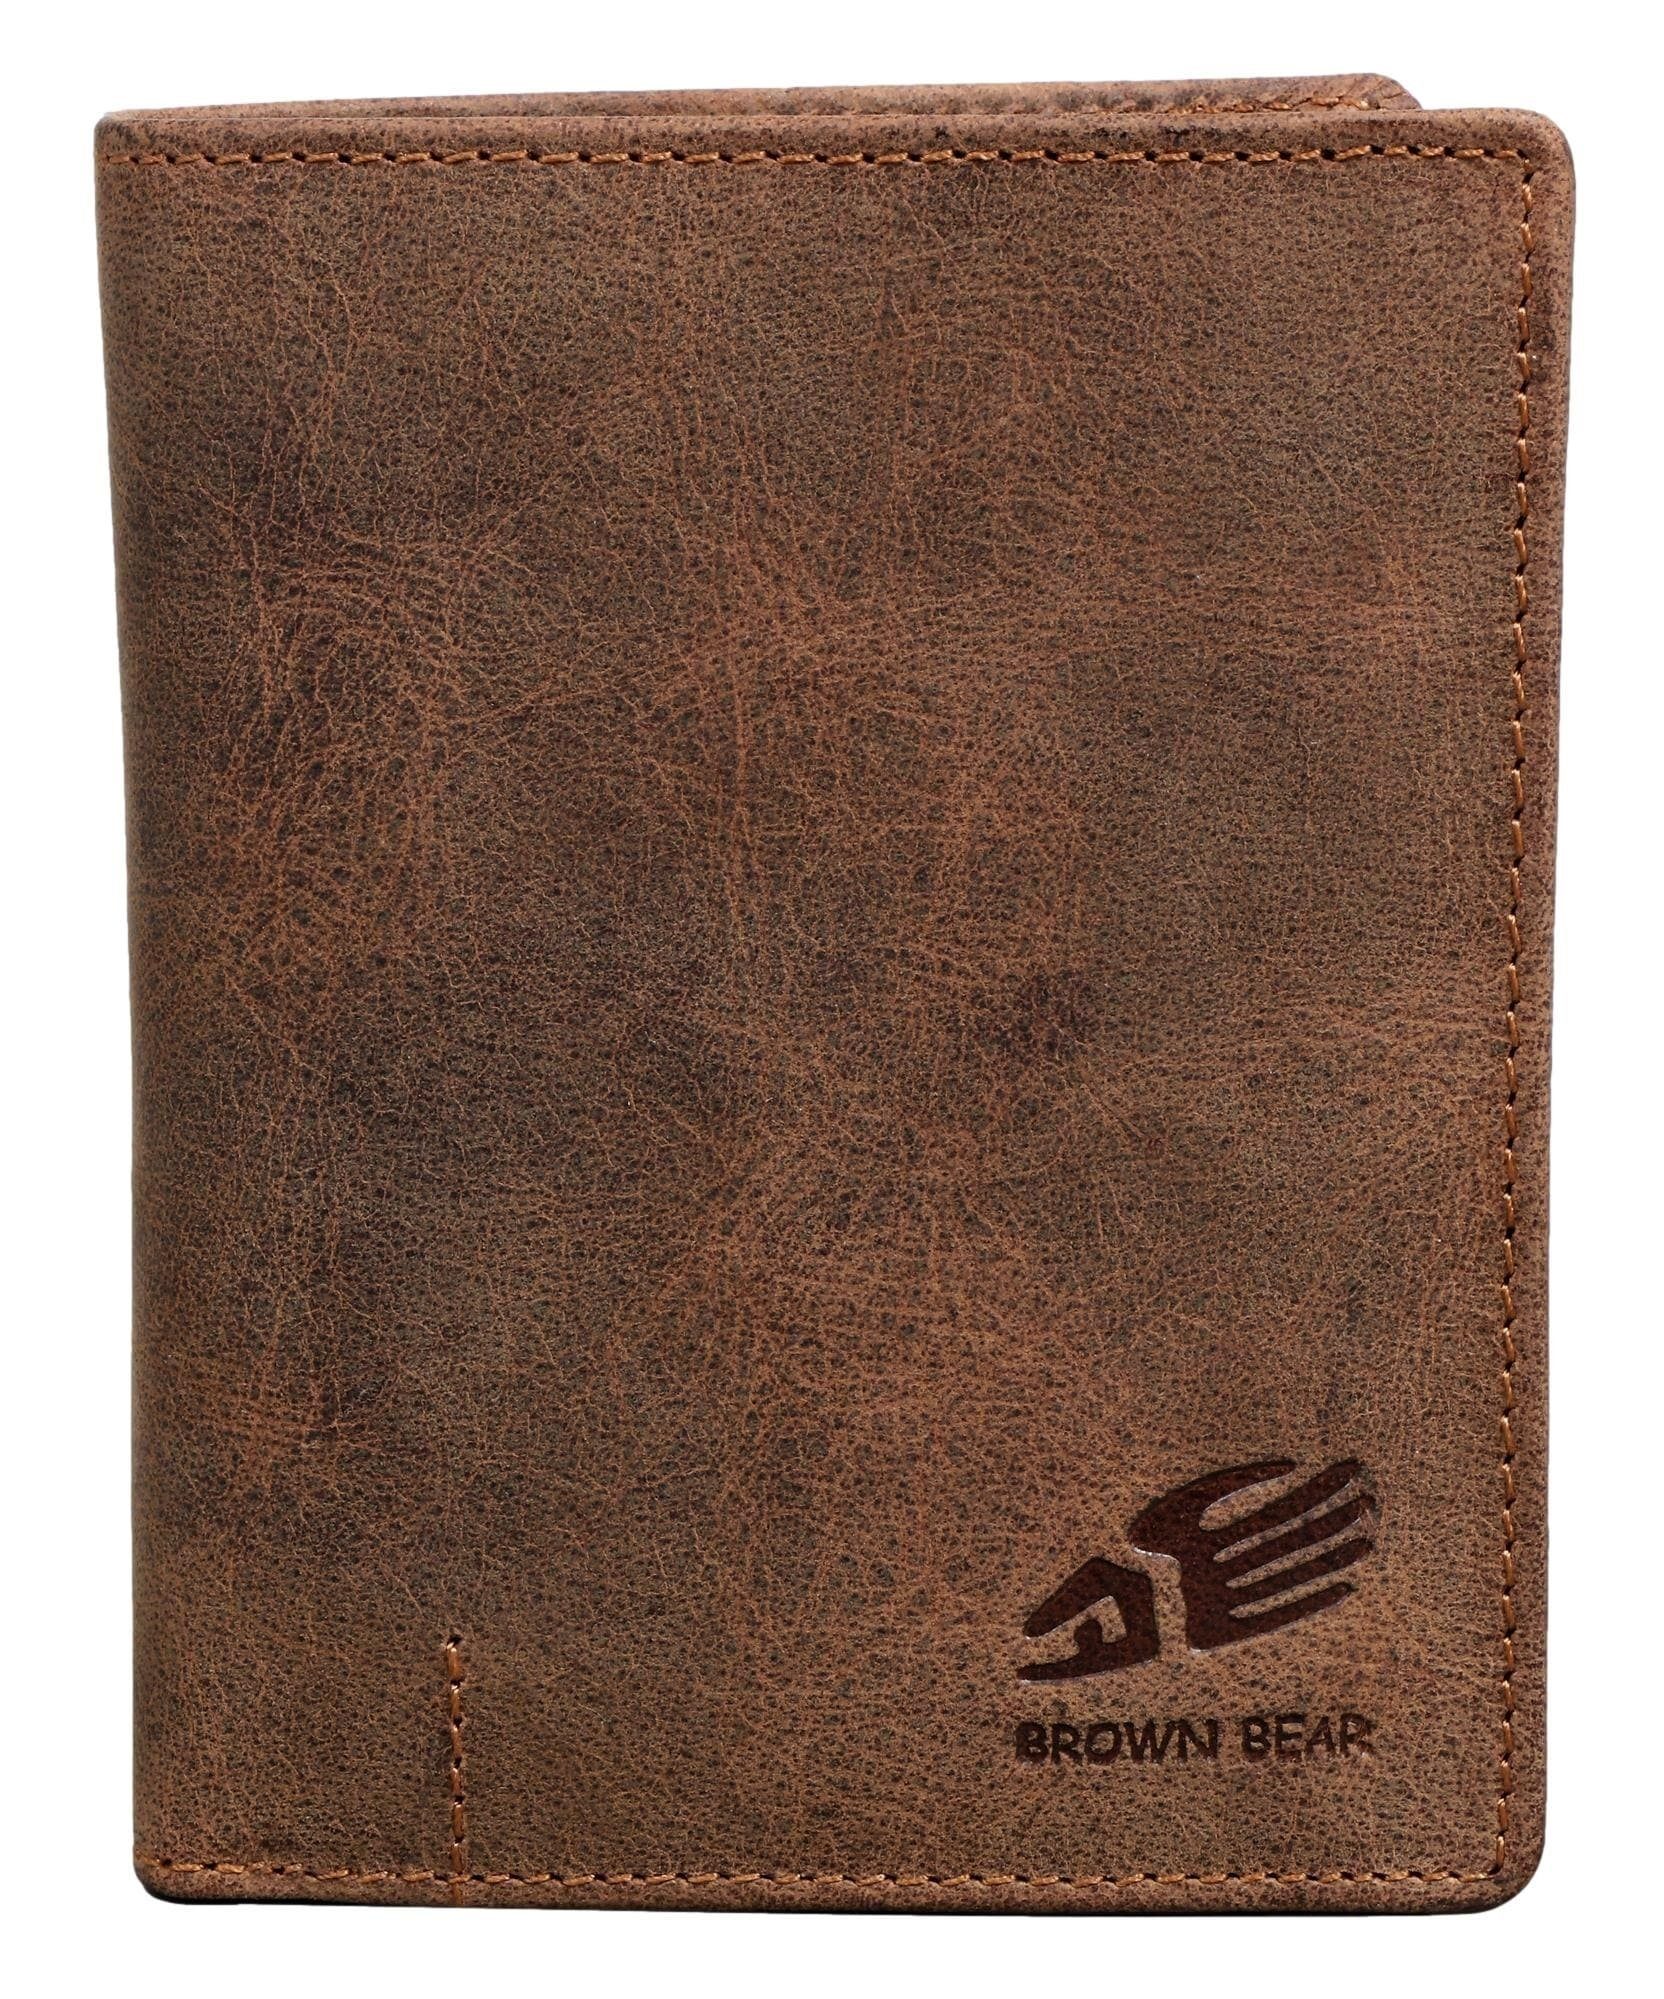 Brown Bear Geldbörse IBP 2051 Reißverschlussinnenfach Unisex Echtleder, 11 Kartenfächer Sichtfach RFID Schutz Braun Vintage Braun-Vintage